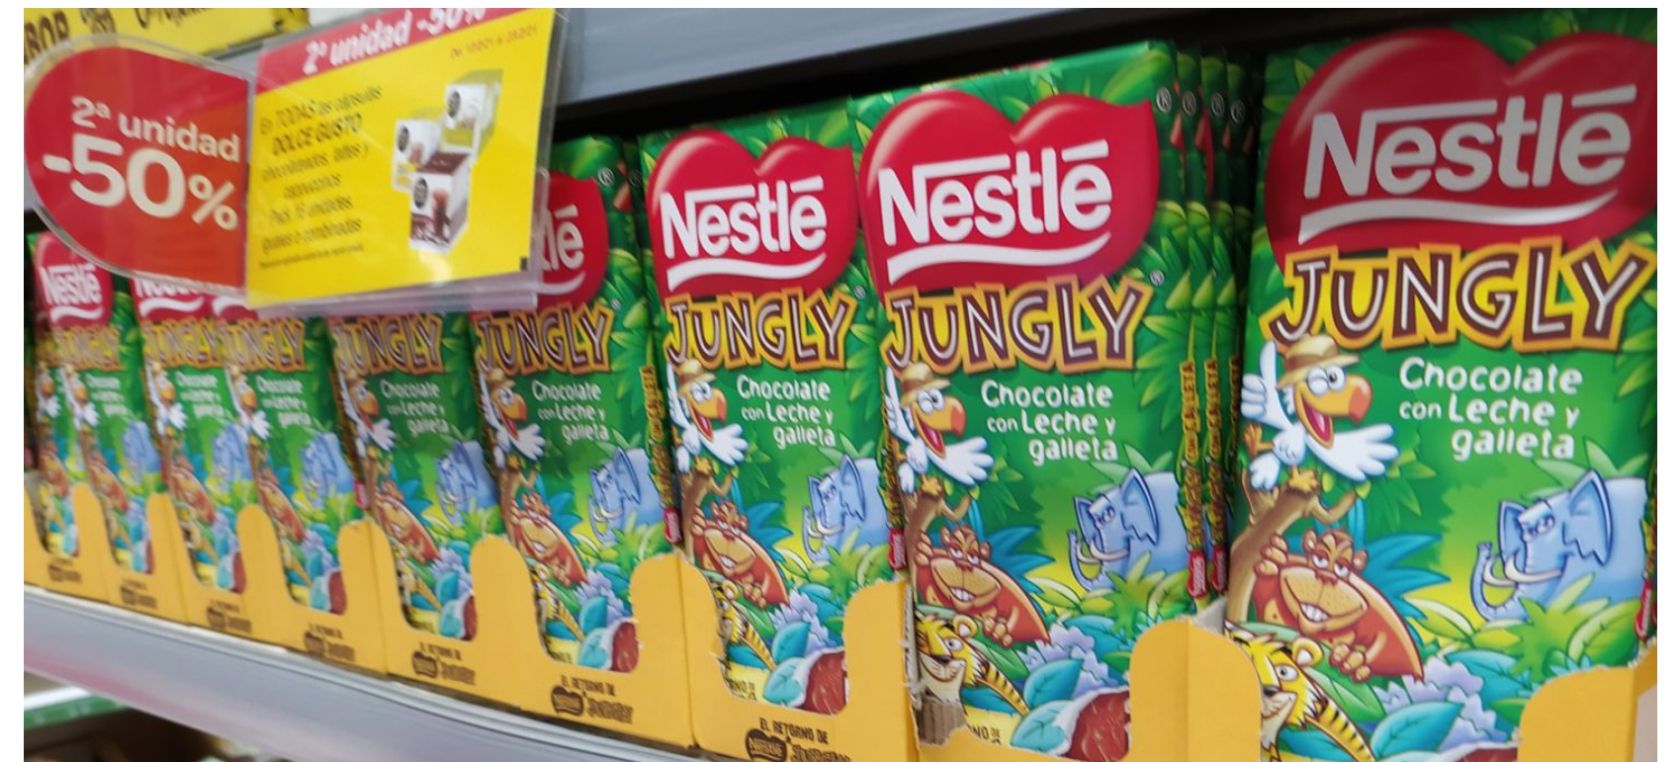 Los supermercados toman medidas ante la fiebre de Nestlé Jungly